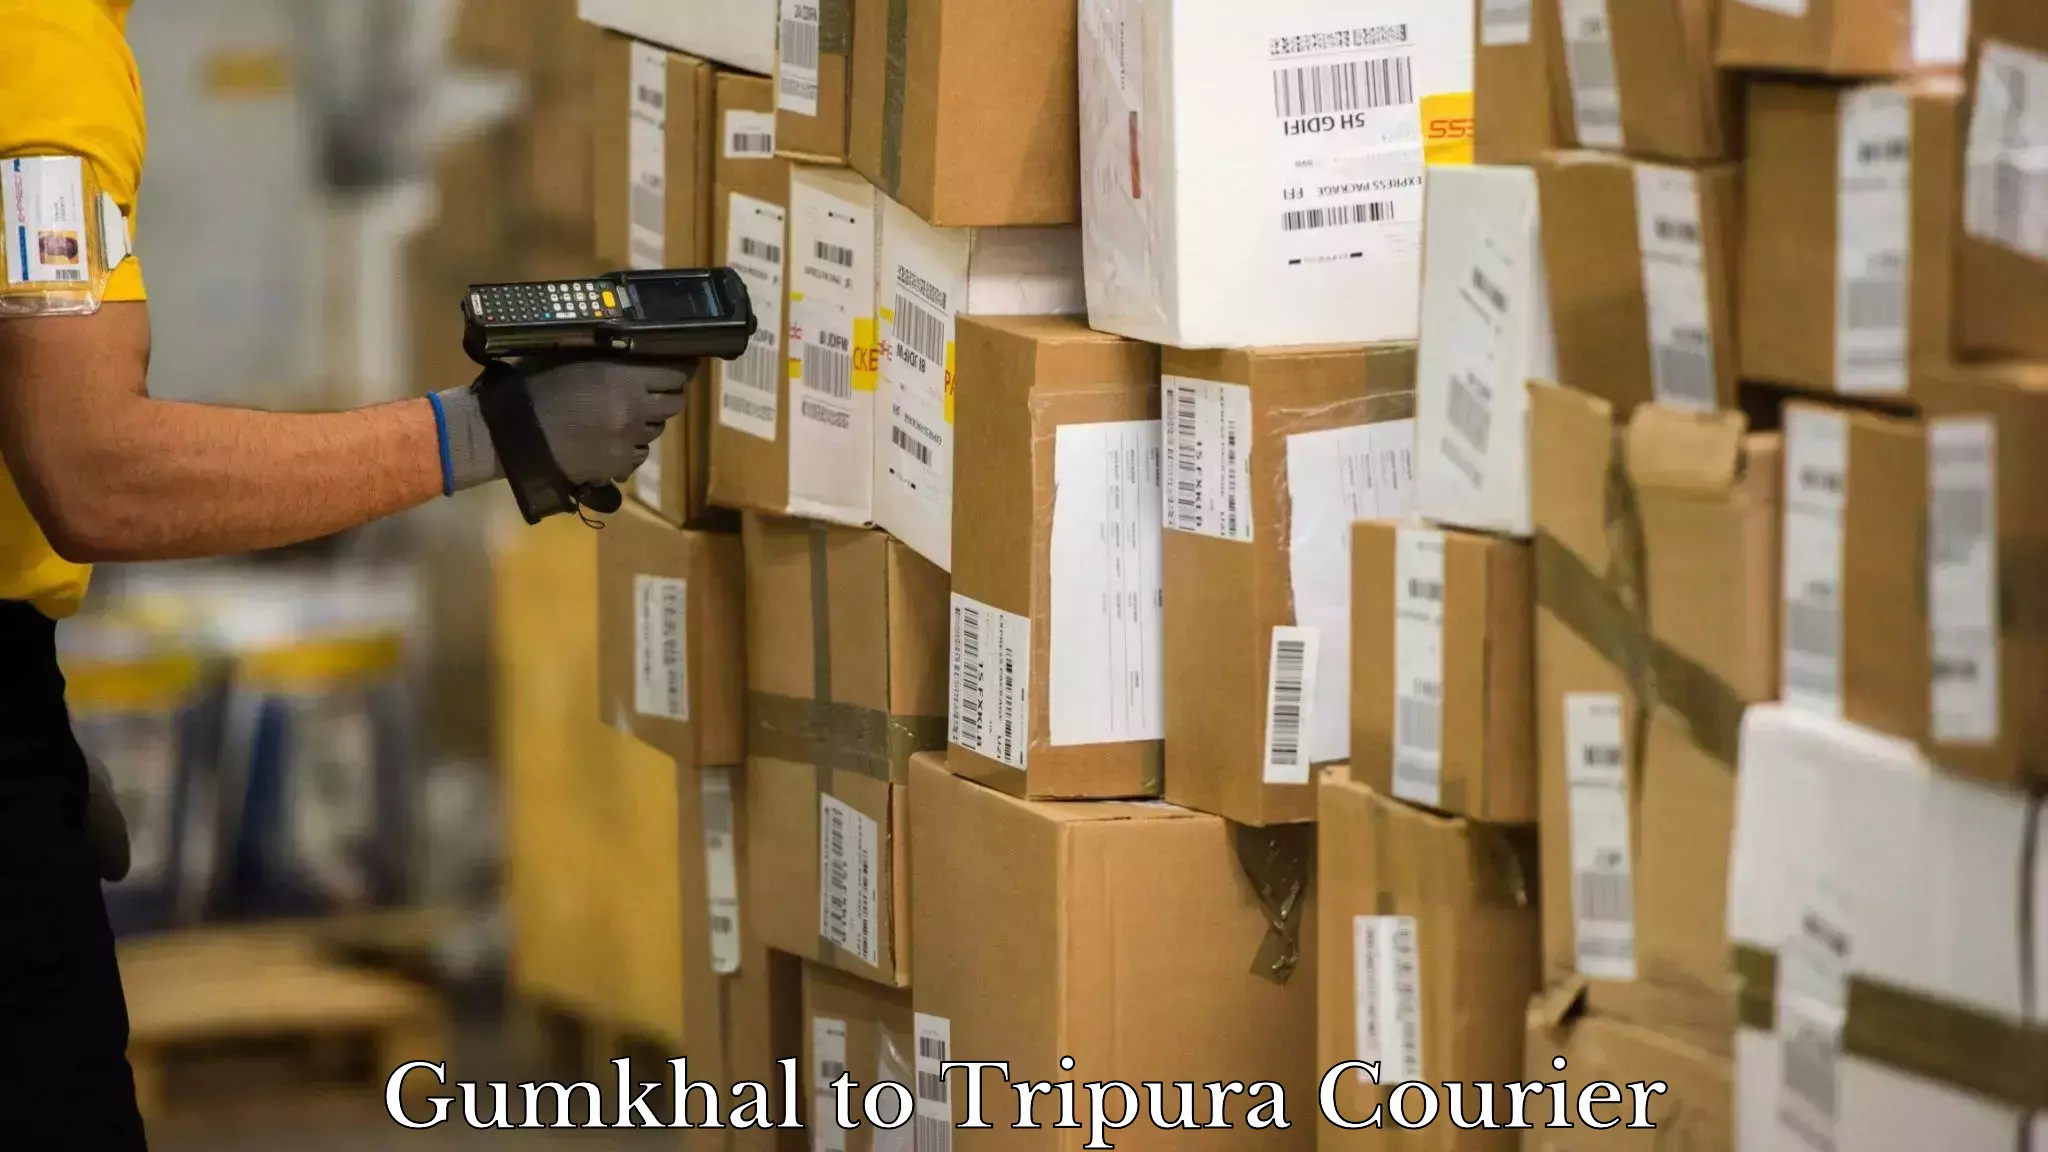 Courier service comparison Gumkhal to Tripura